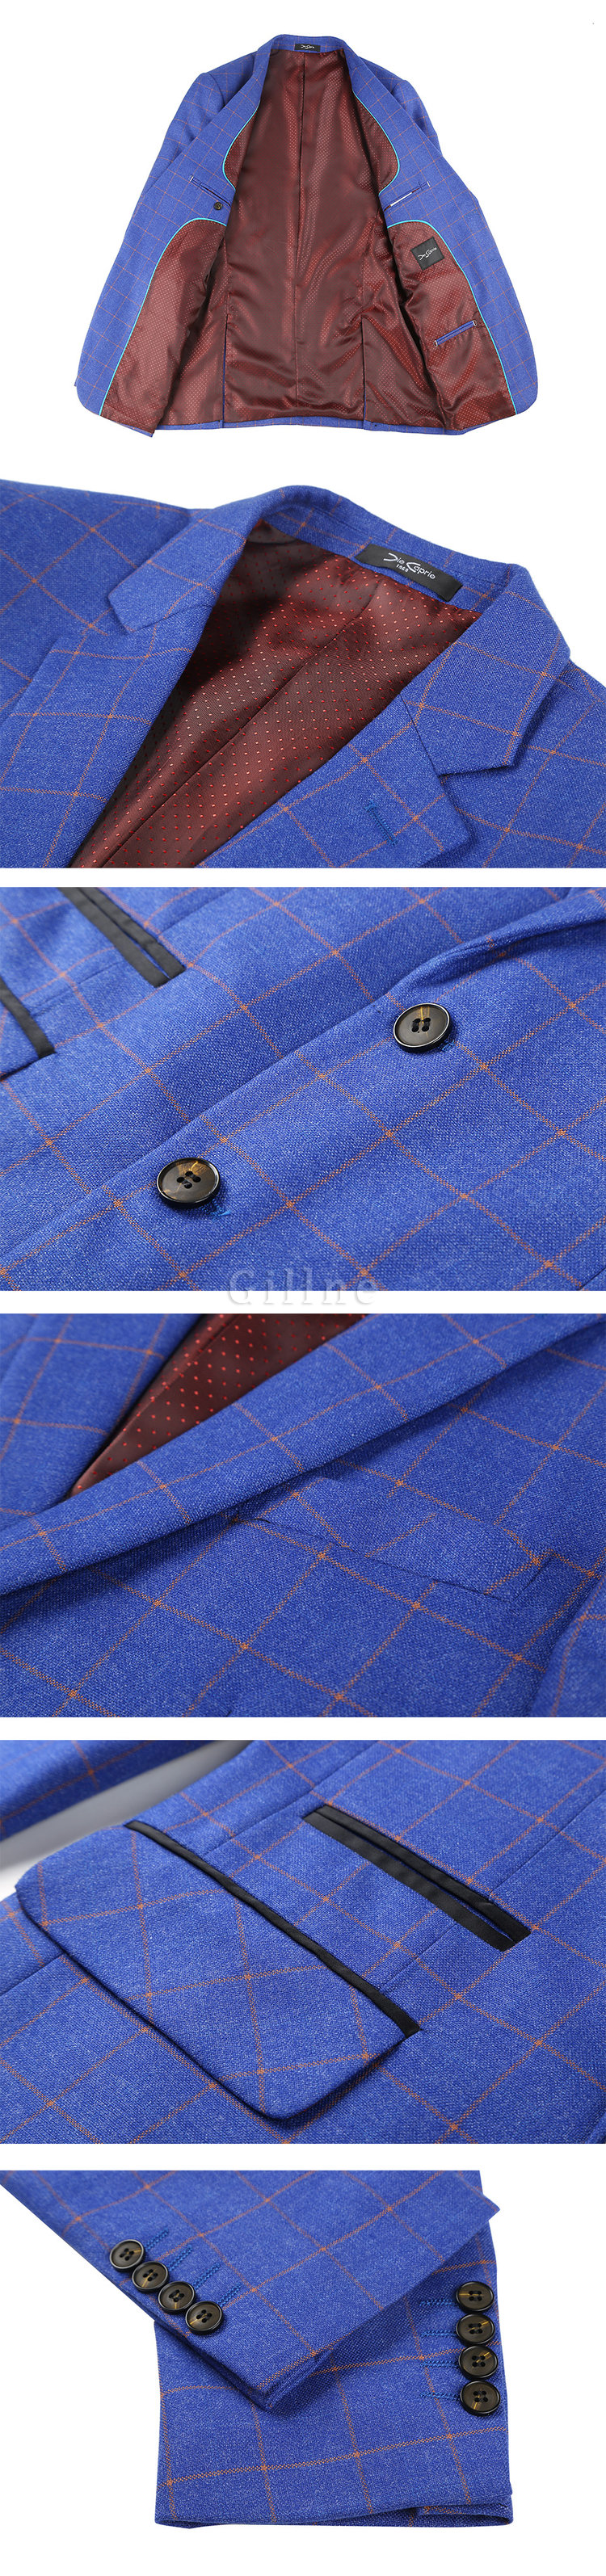 Royal Blau Jacke Hose Weste Mode Hohe Qualität Plaid Anzüge